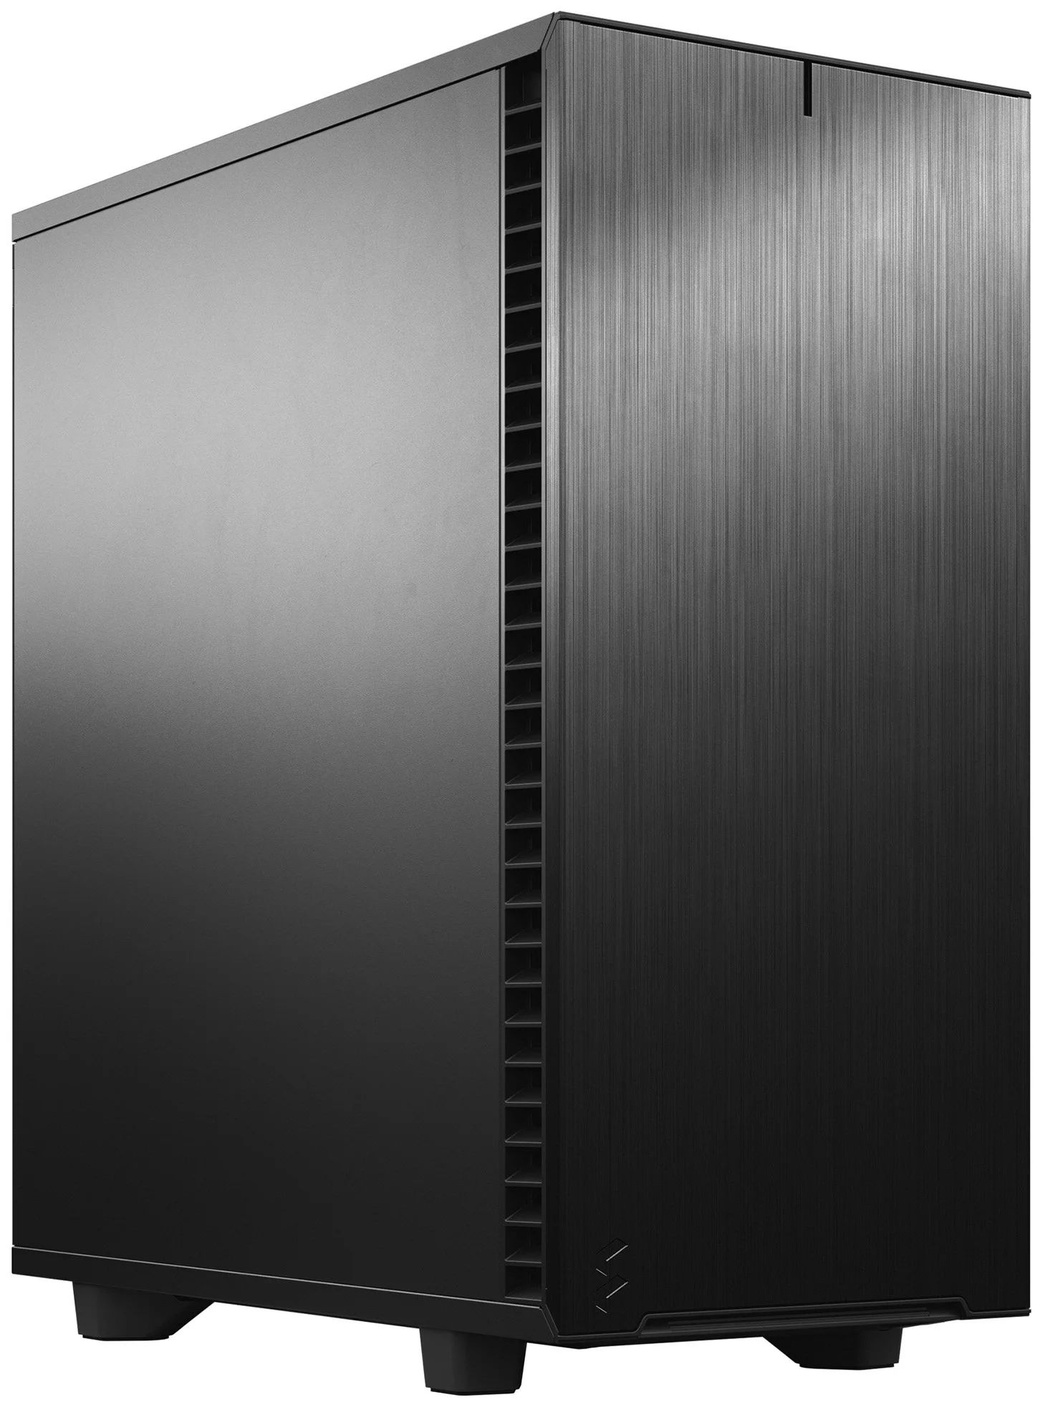 Компьютерный корпус Fractal Design Define 7 Compact Black Solid, черный фото